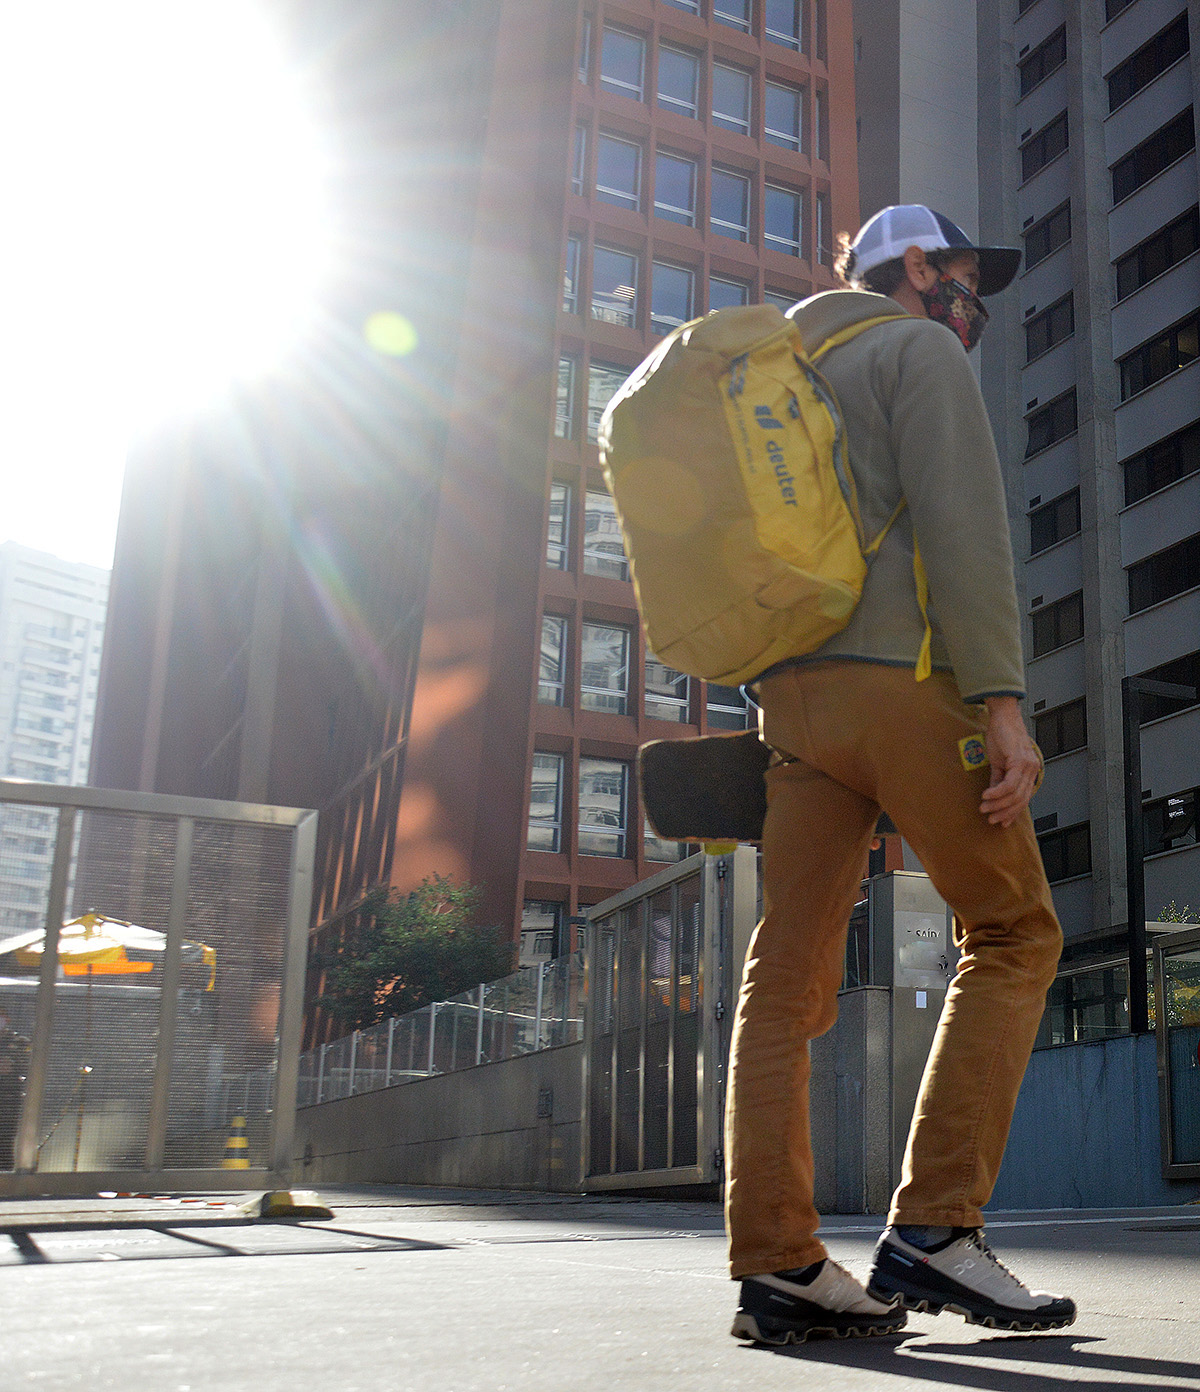 A Duffel PRO 40 da linha AViANT Deuter é uma bolsa tipo duffle bag. Versátil, é ideal para viagens urbanas, expedições ou para o dia a dia.